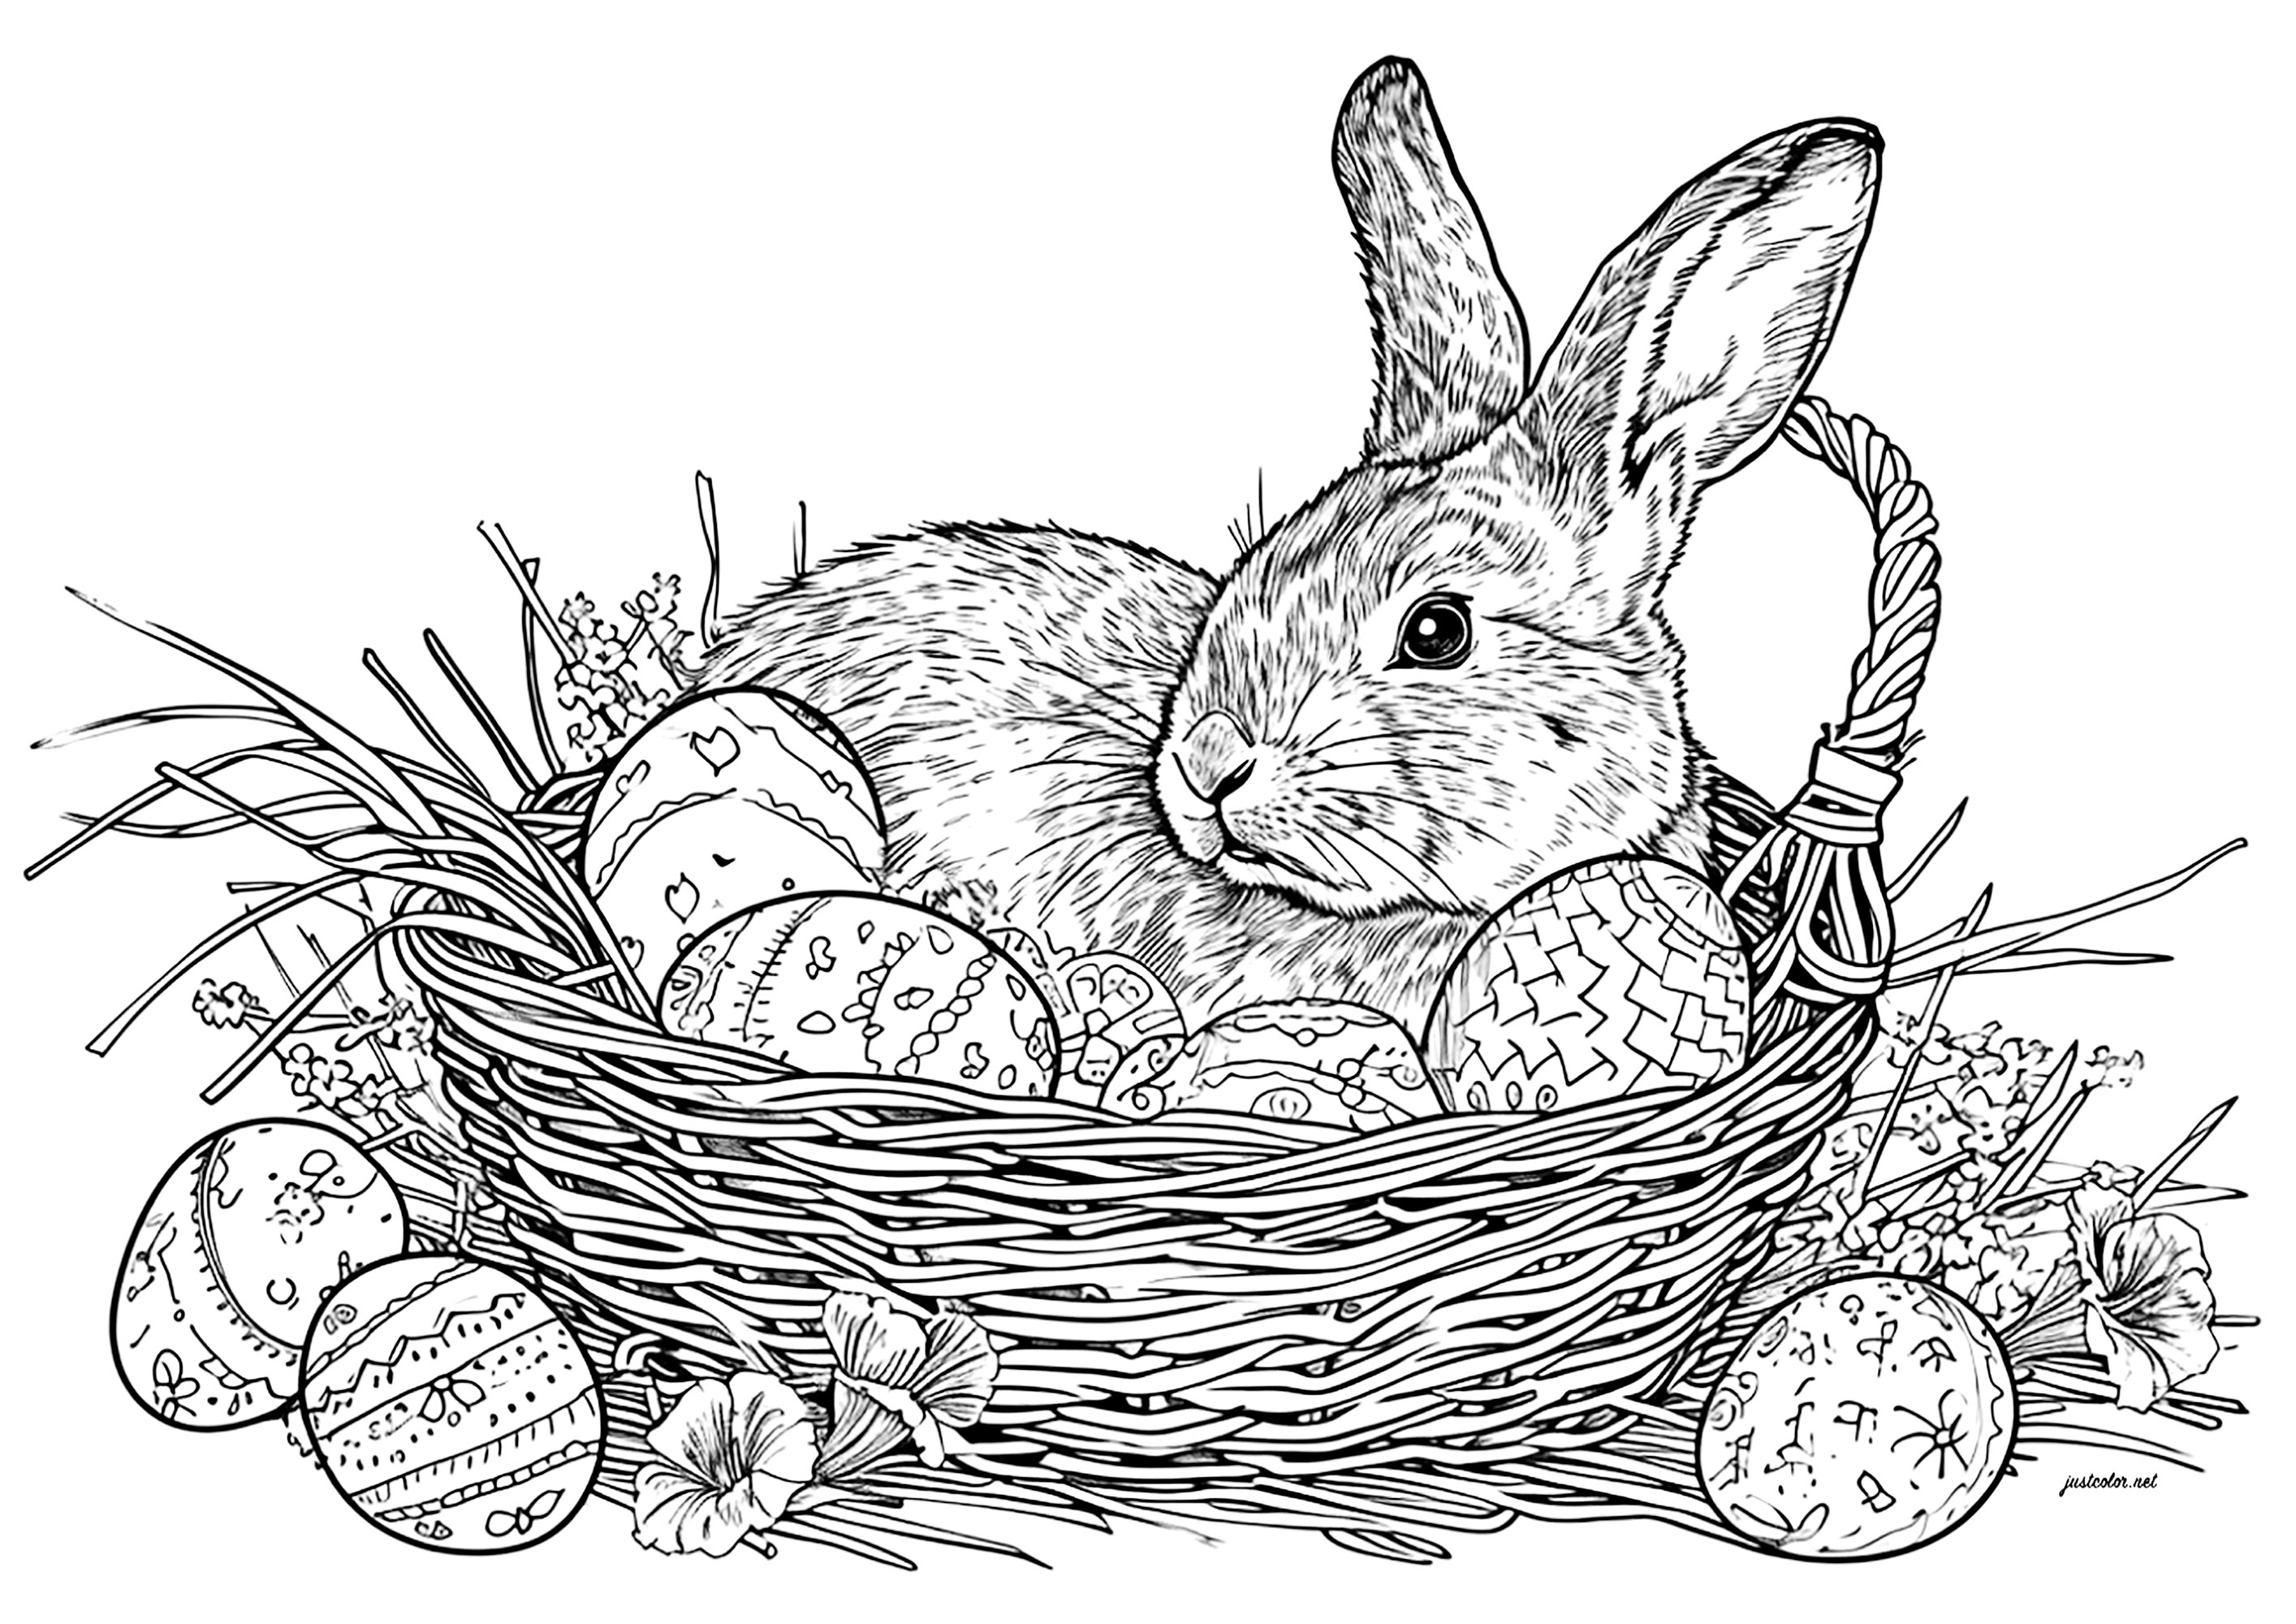 Conejo de Pascua y huevos en una cesta de mimbre